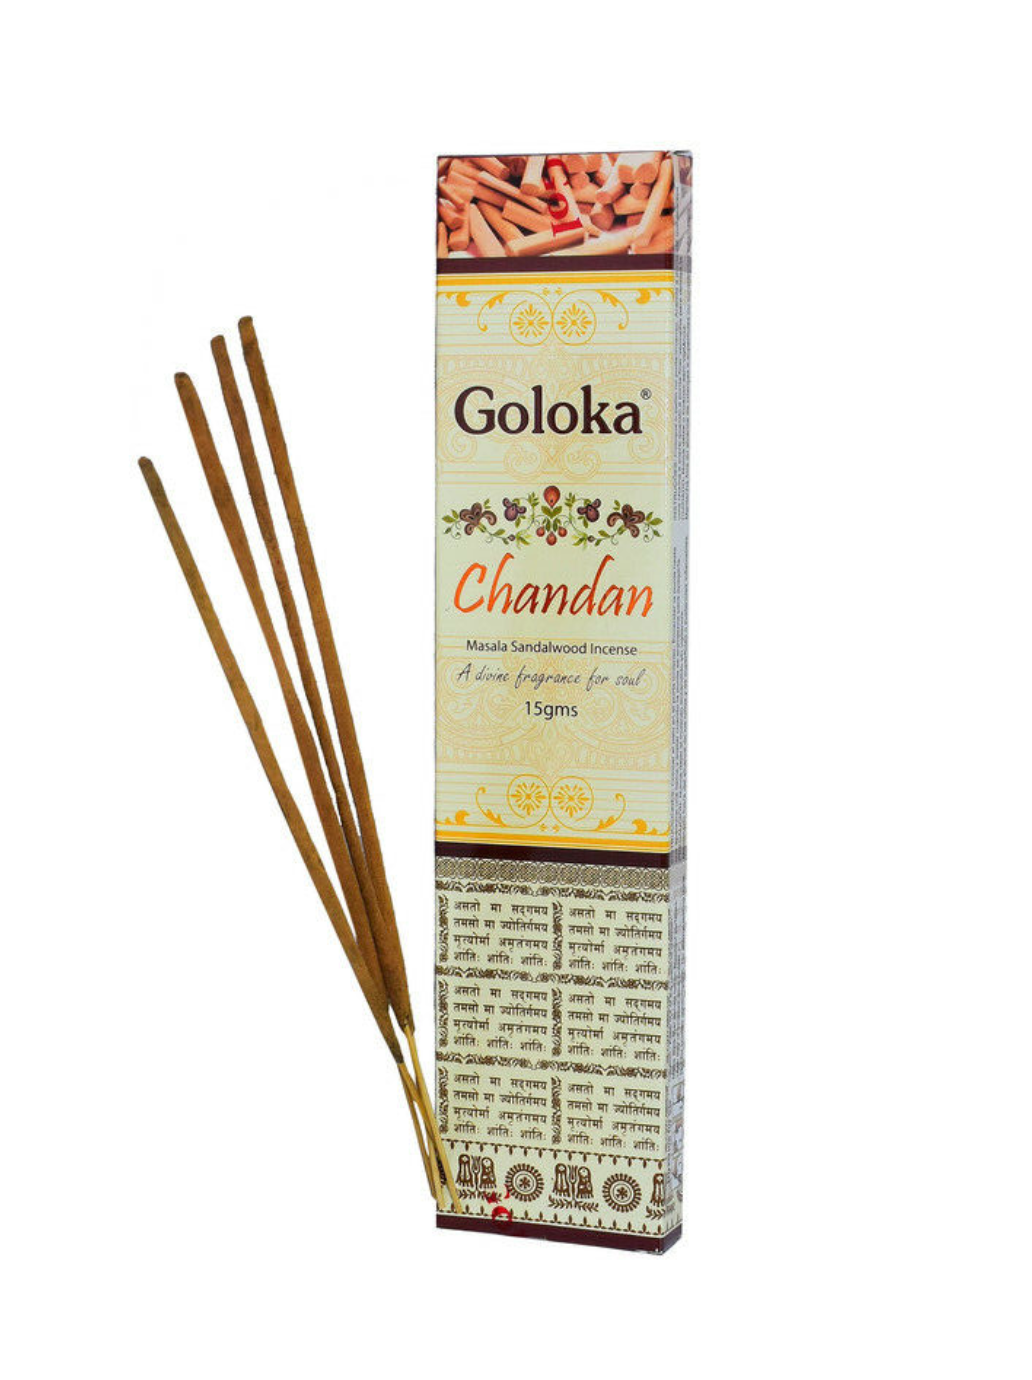 Goloka Chandan Incense